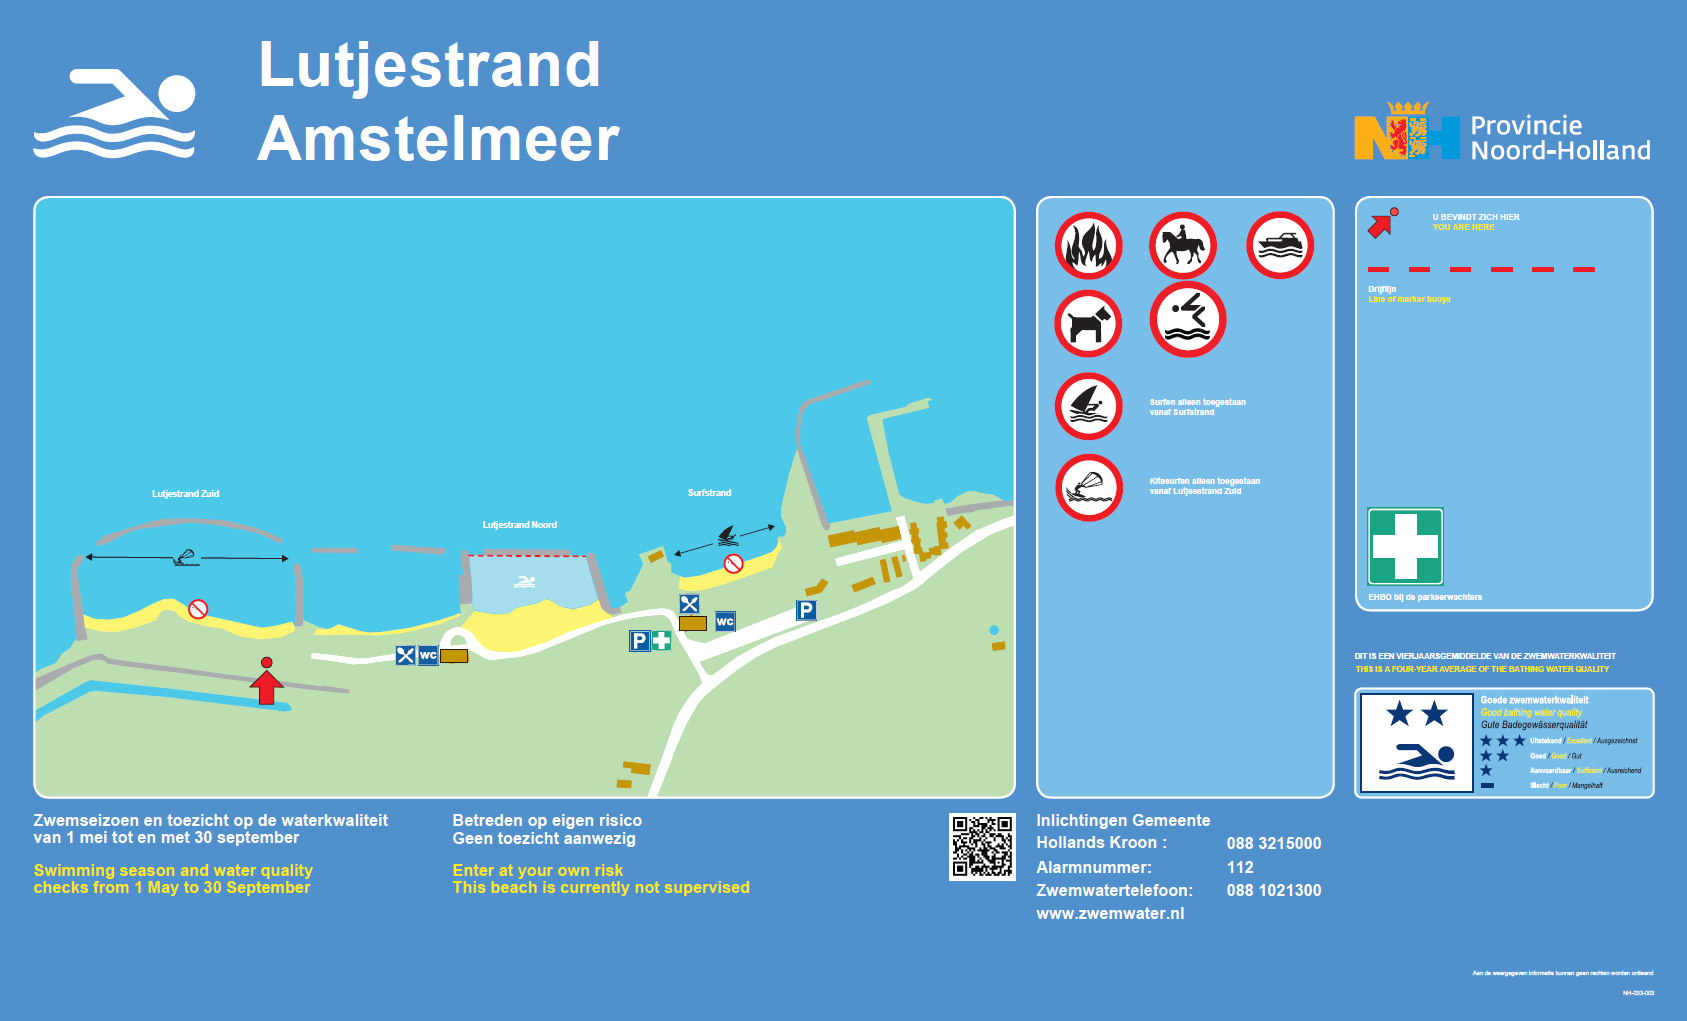 Het informatiebord bij zwemlocatie Lutjestrand, Amstelmeer